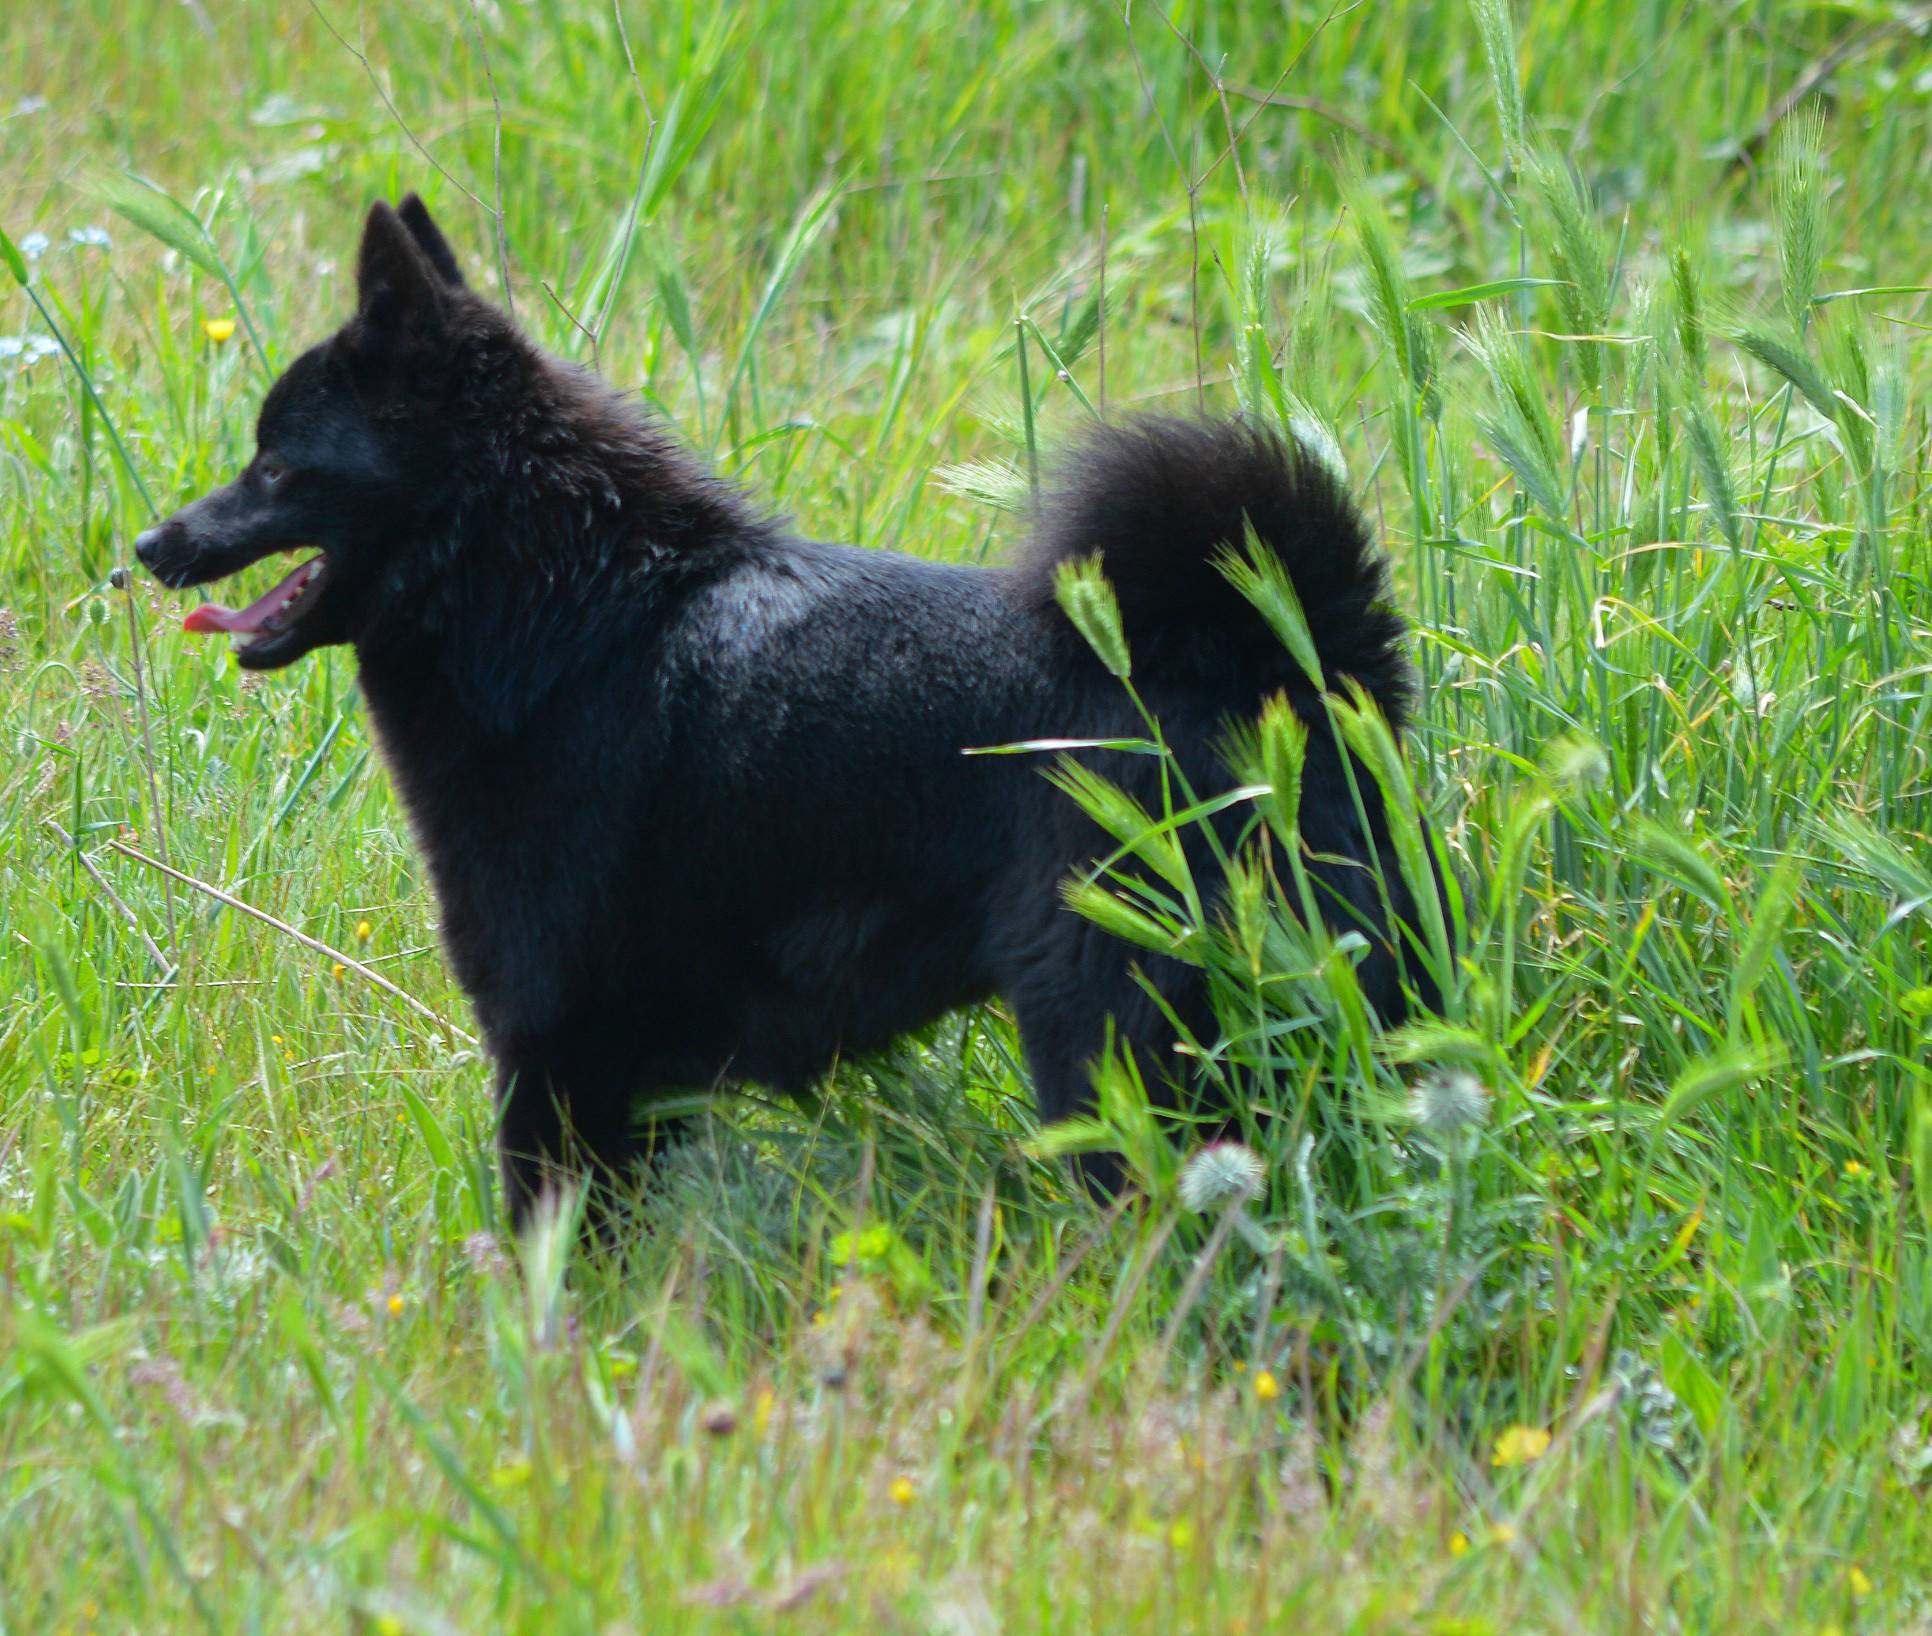 Шипперке – фото собаки, описание породы, цена щенков, видео